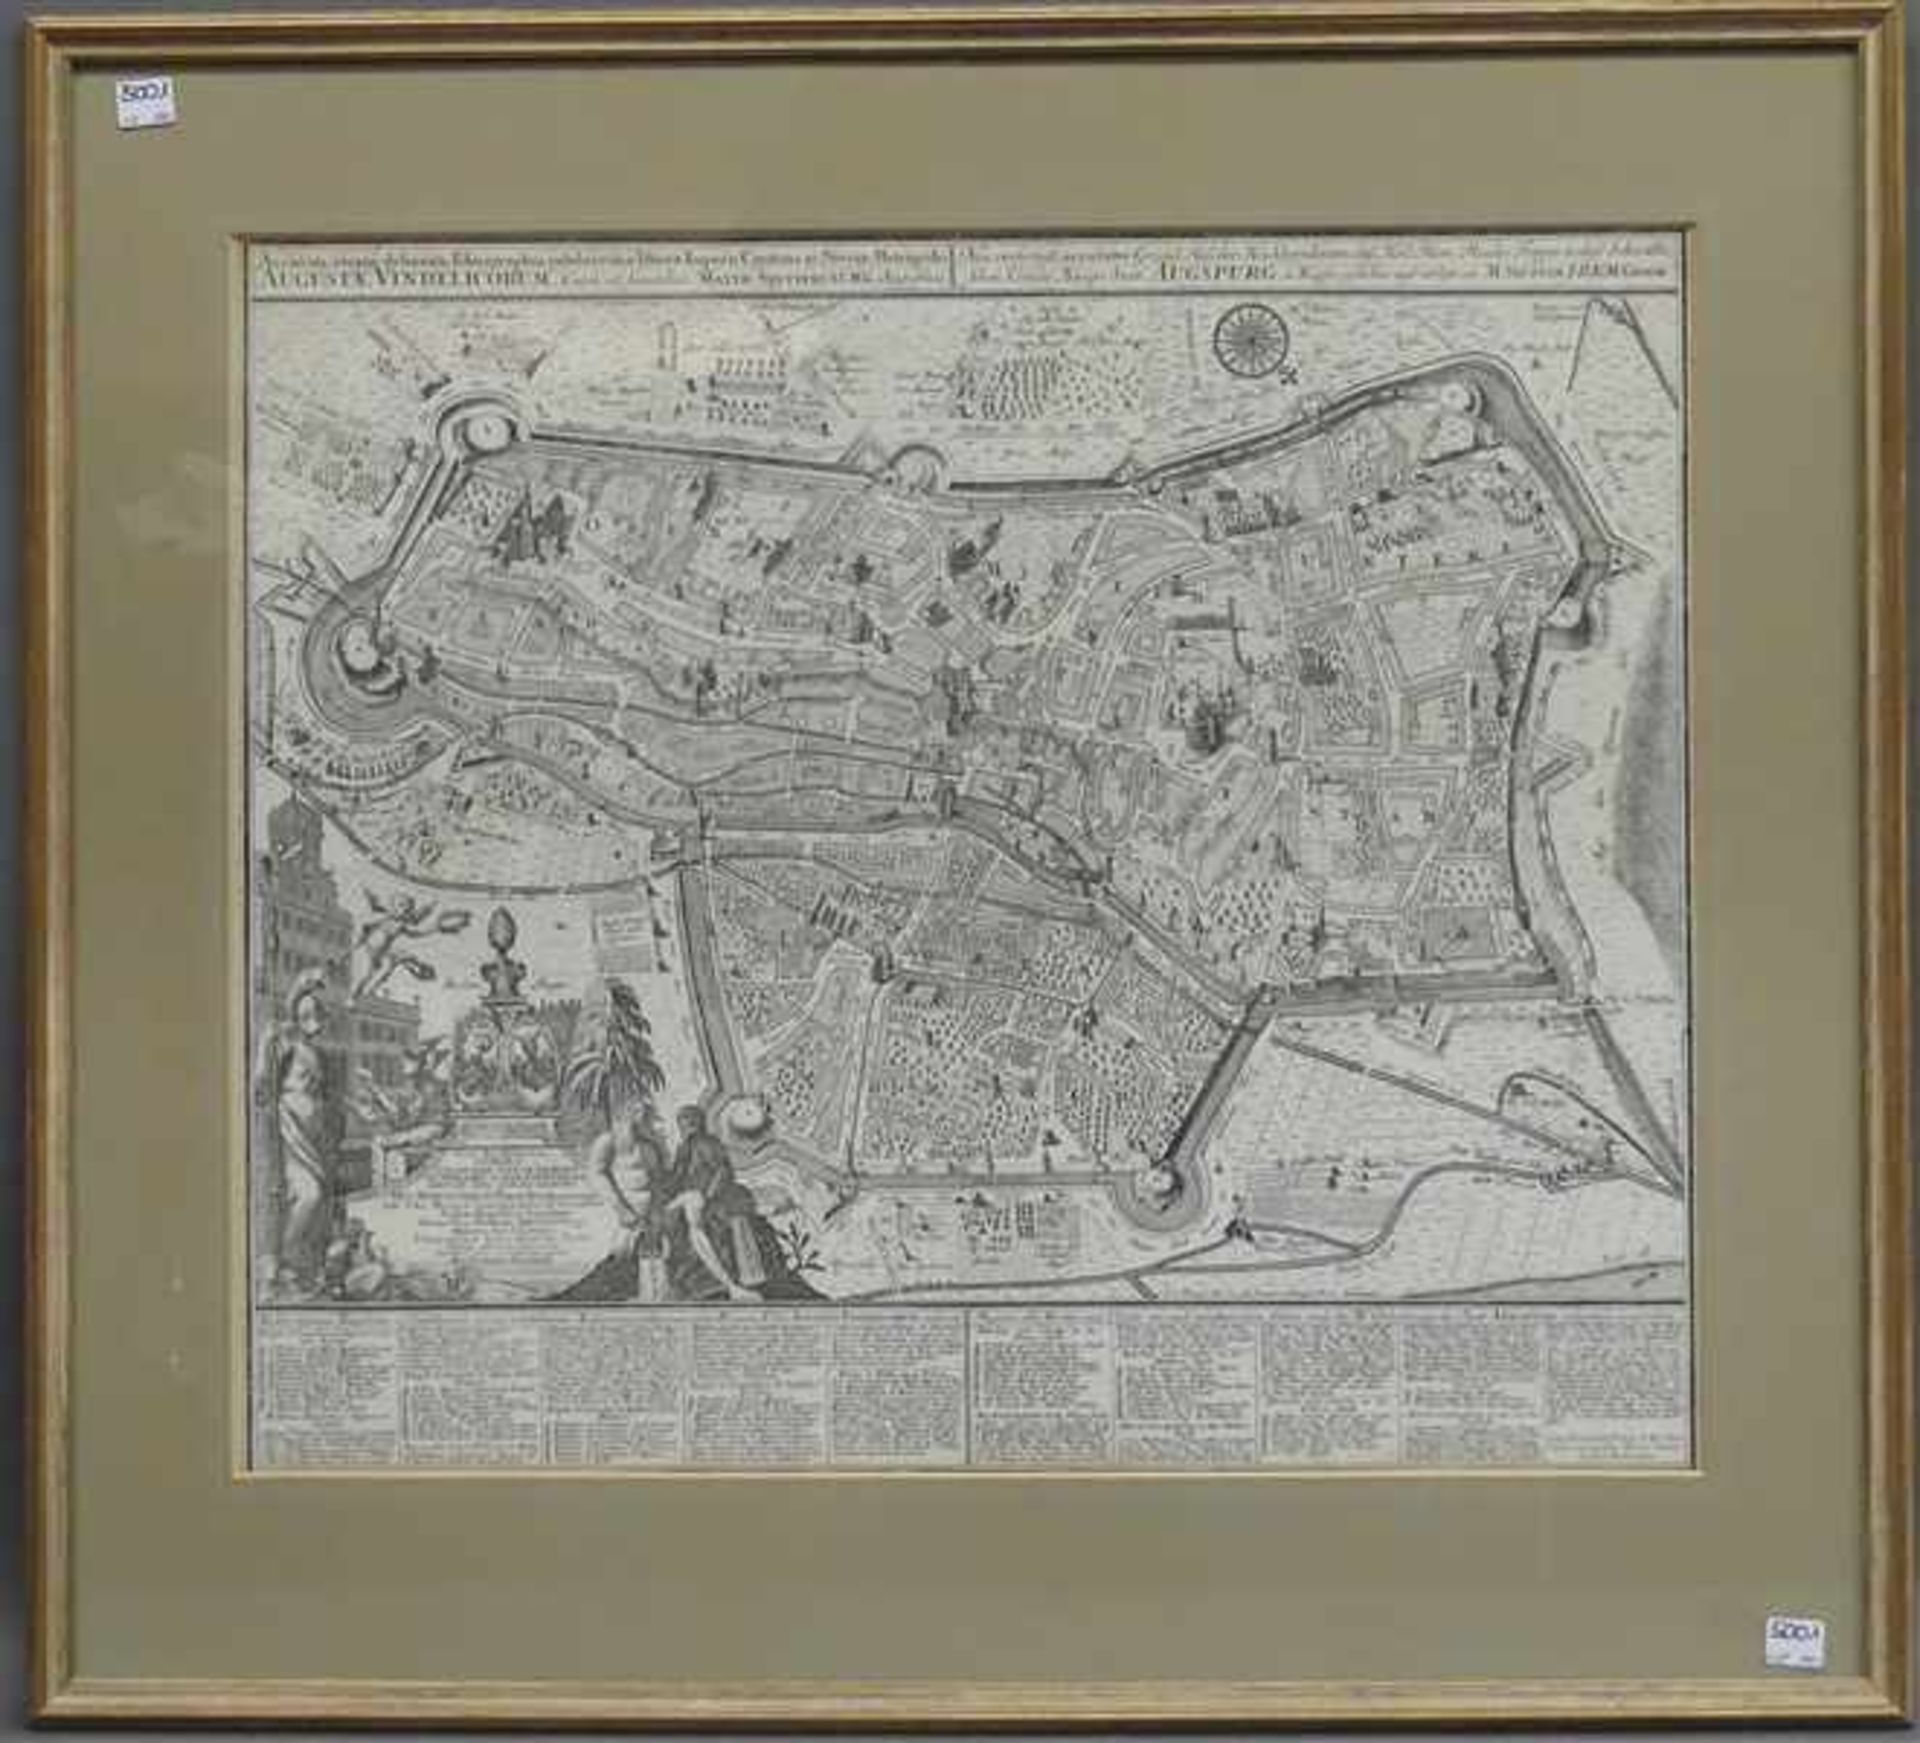 Kupferstichgroßformatiger Plan der "Stadt Augspurg" von Matthias Seutter, mit Legende und - Bild 2 aus 5